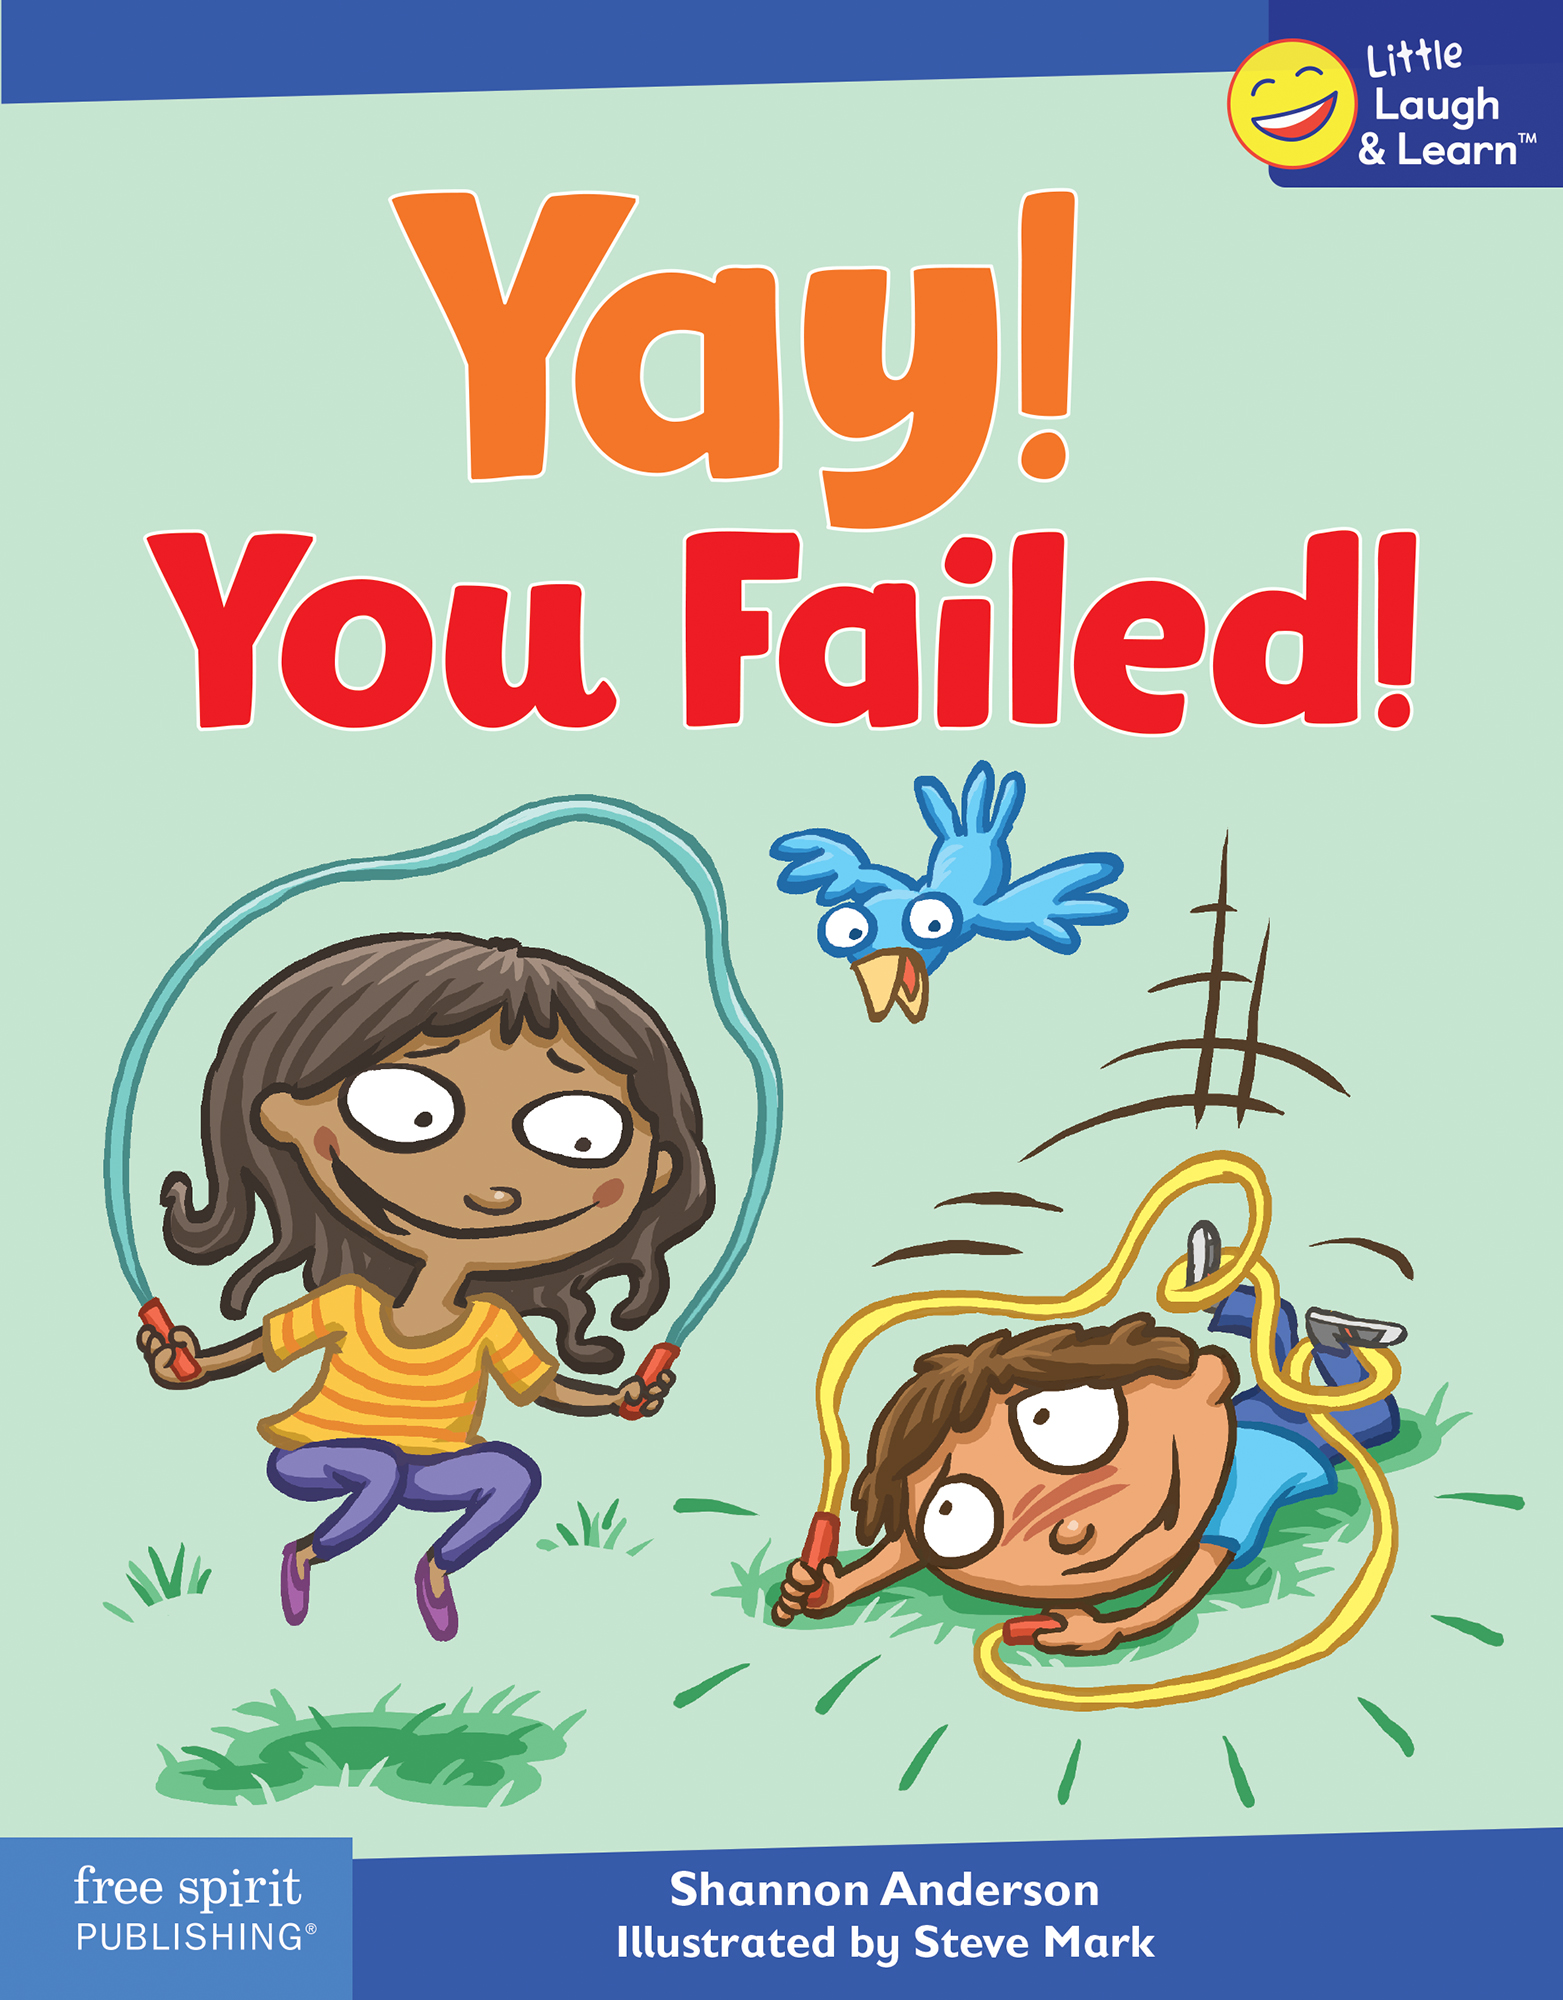 Yay! You Failed!